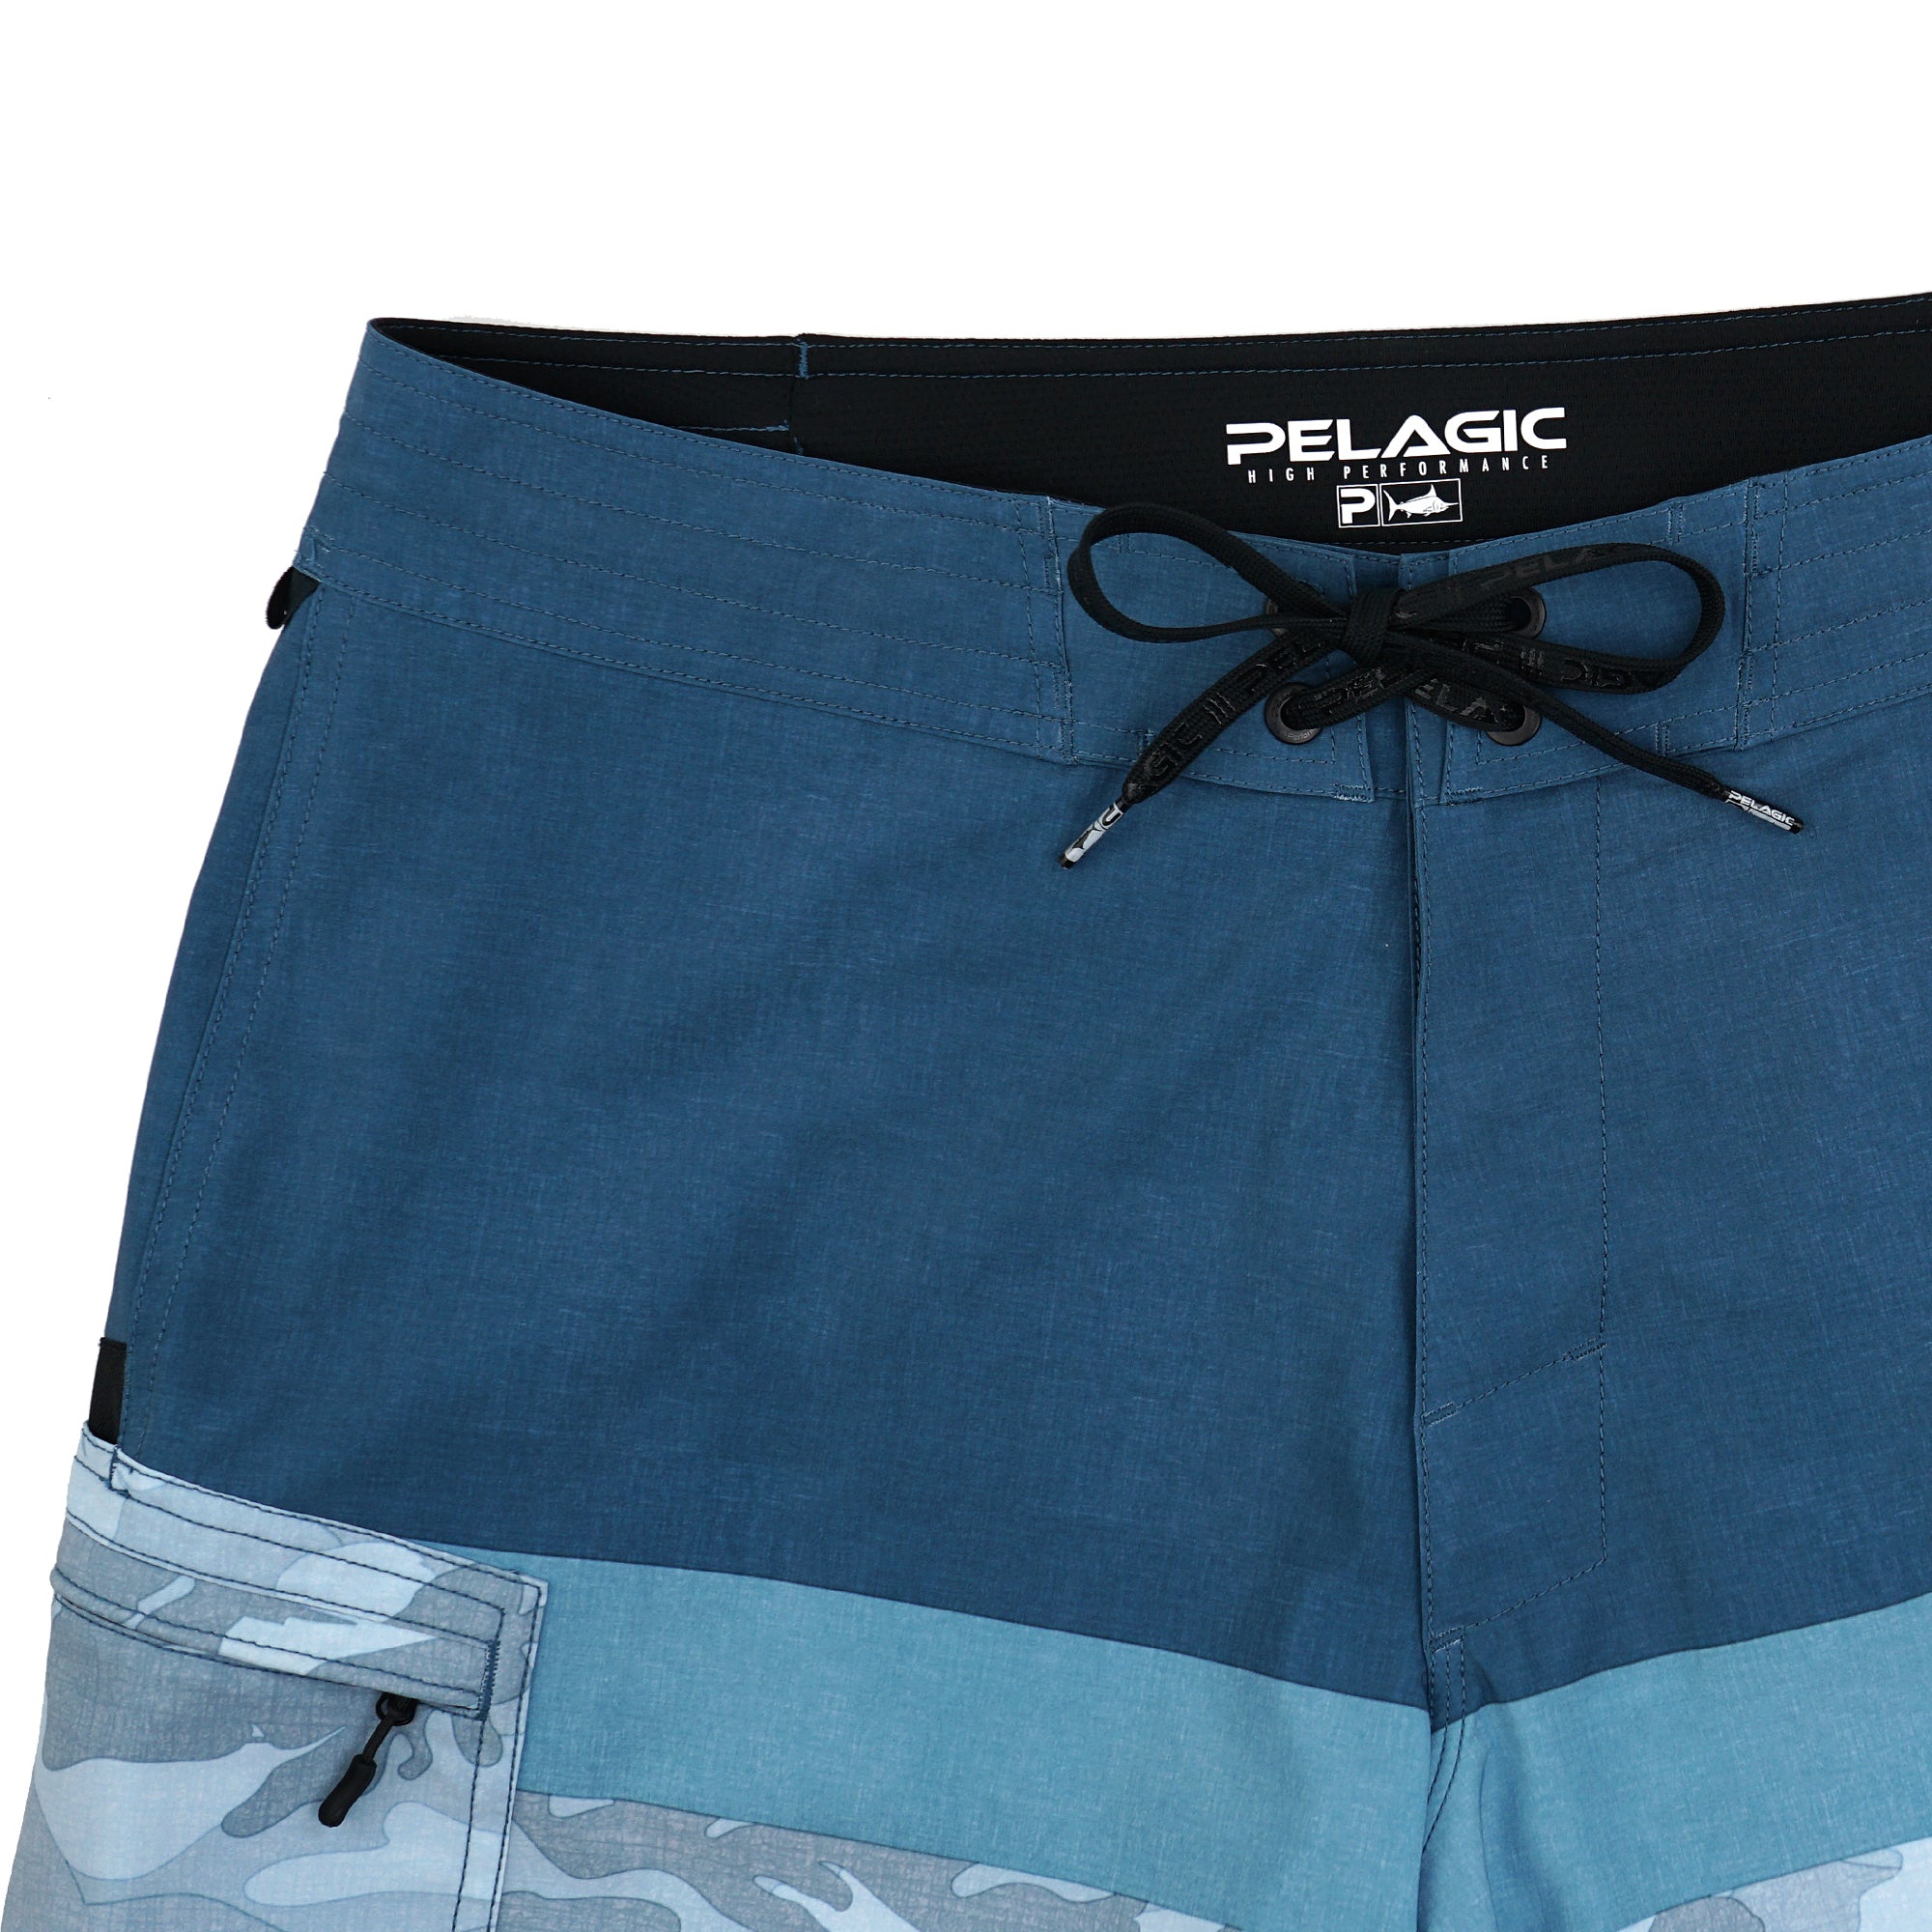 Pelagic Blue Water Fishing Shorts - Fish Camo Slate - 38